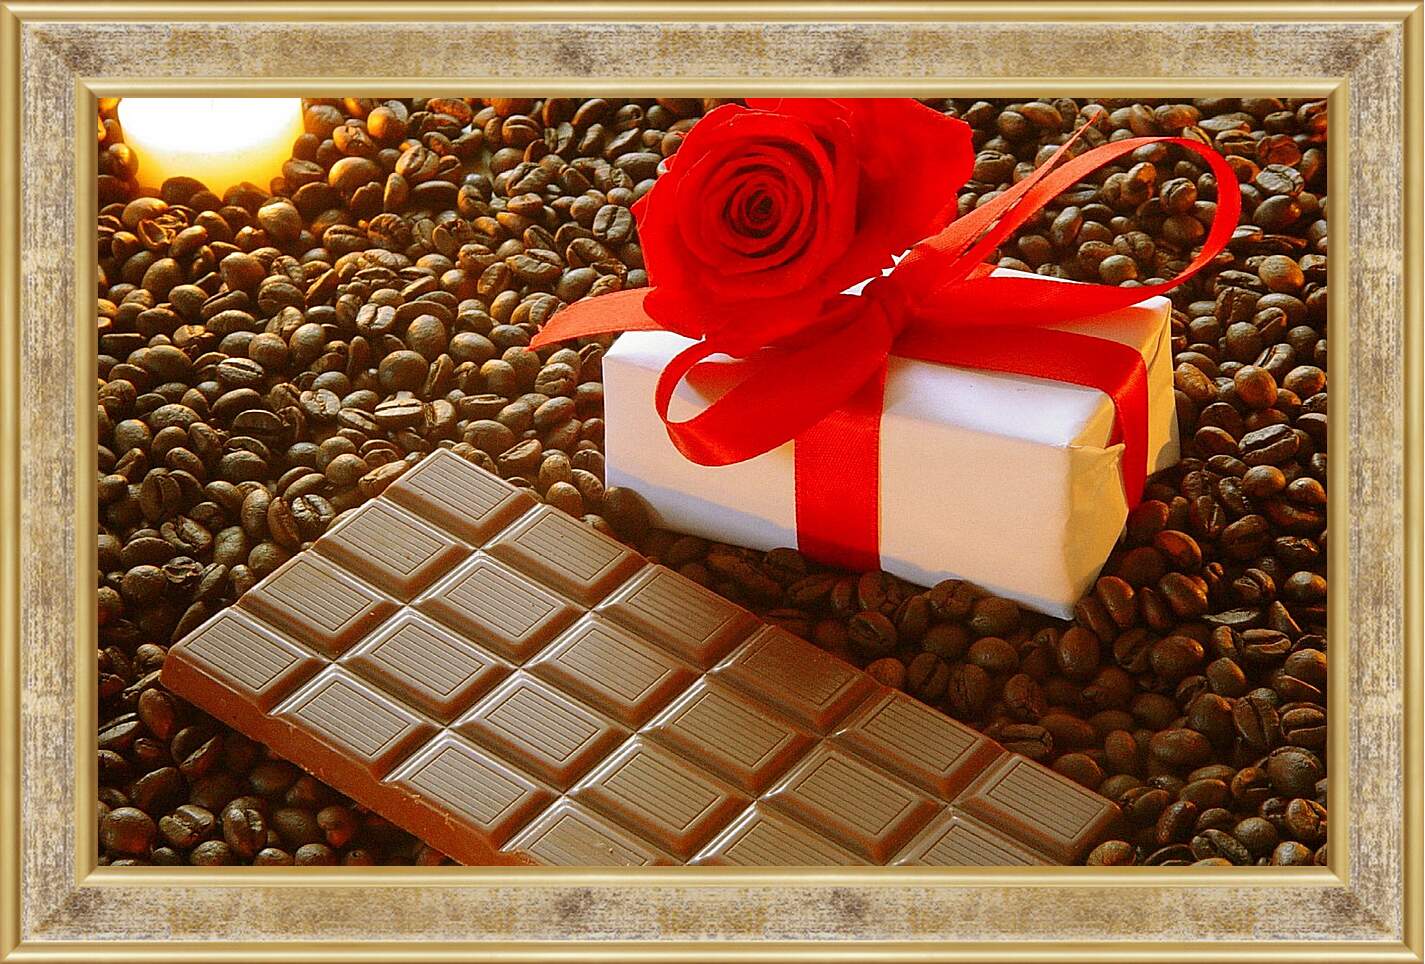 Картина в раме - Плитка шоколада на зернах кофе и подарок